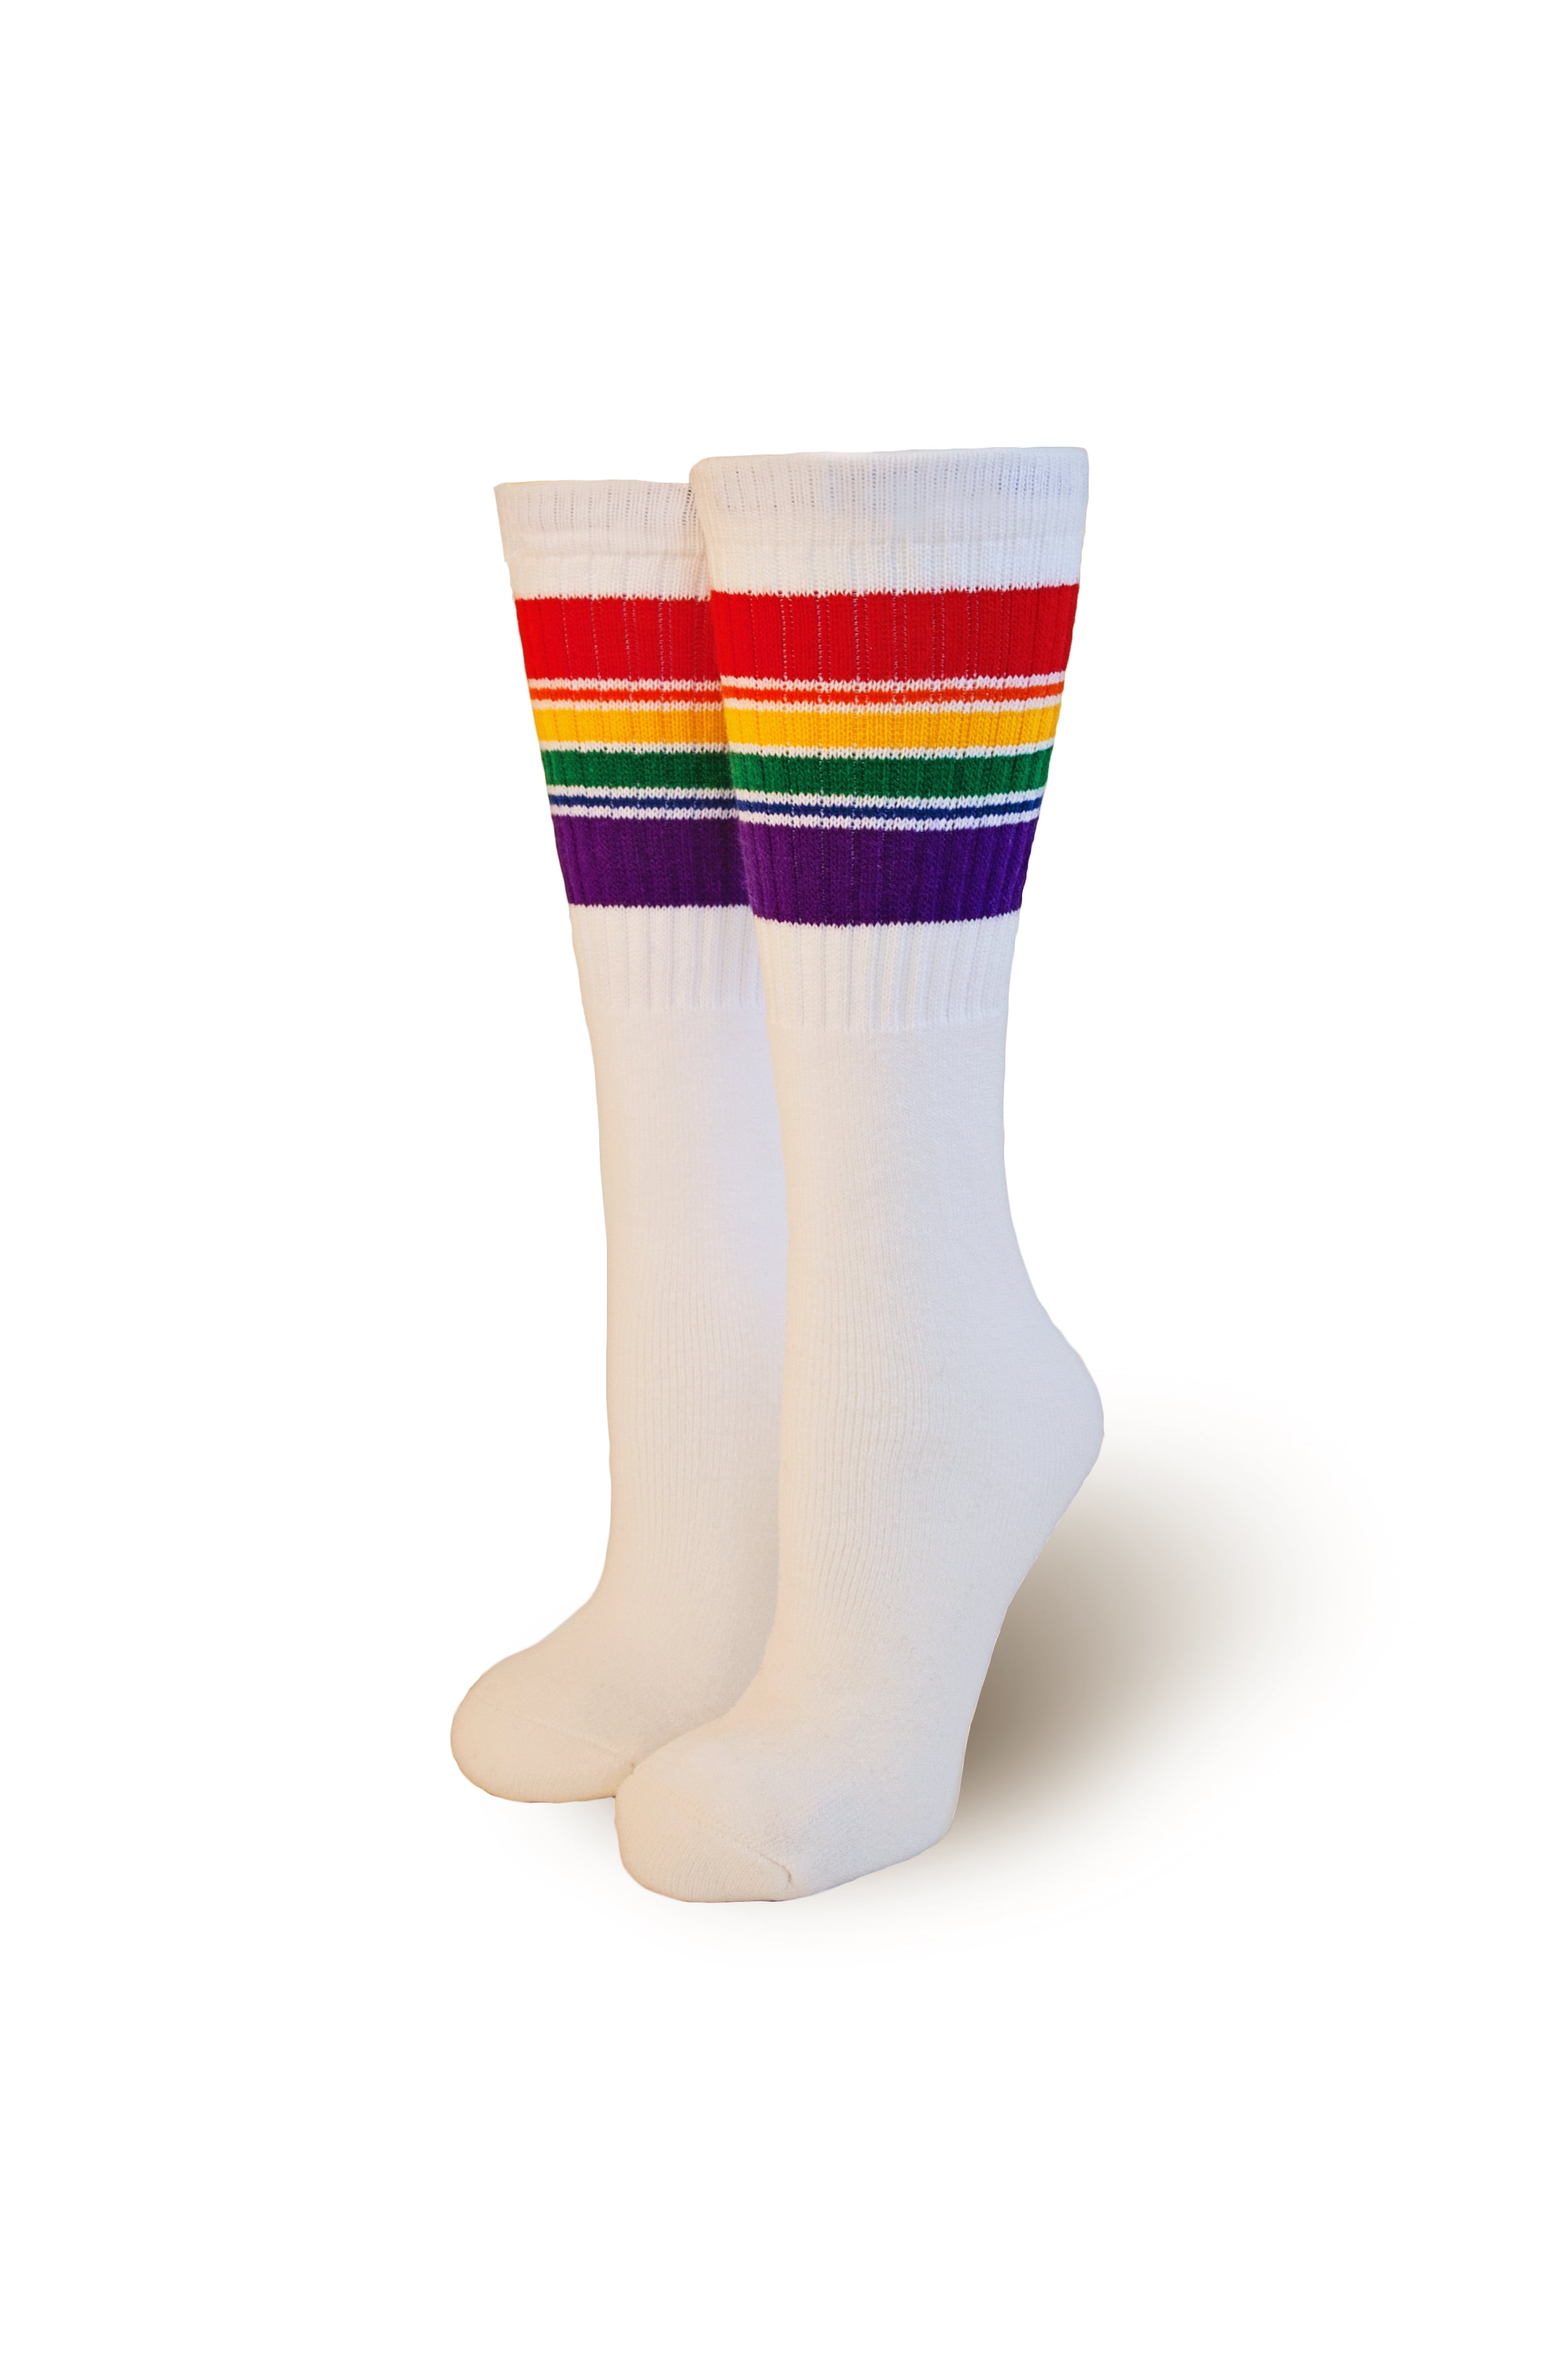 Pride Socks Baby Rainbow Striped Tube Socks- Retro T6-10 - Walmart.com